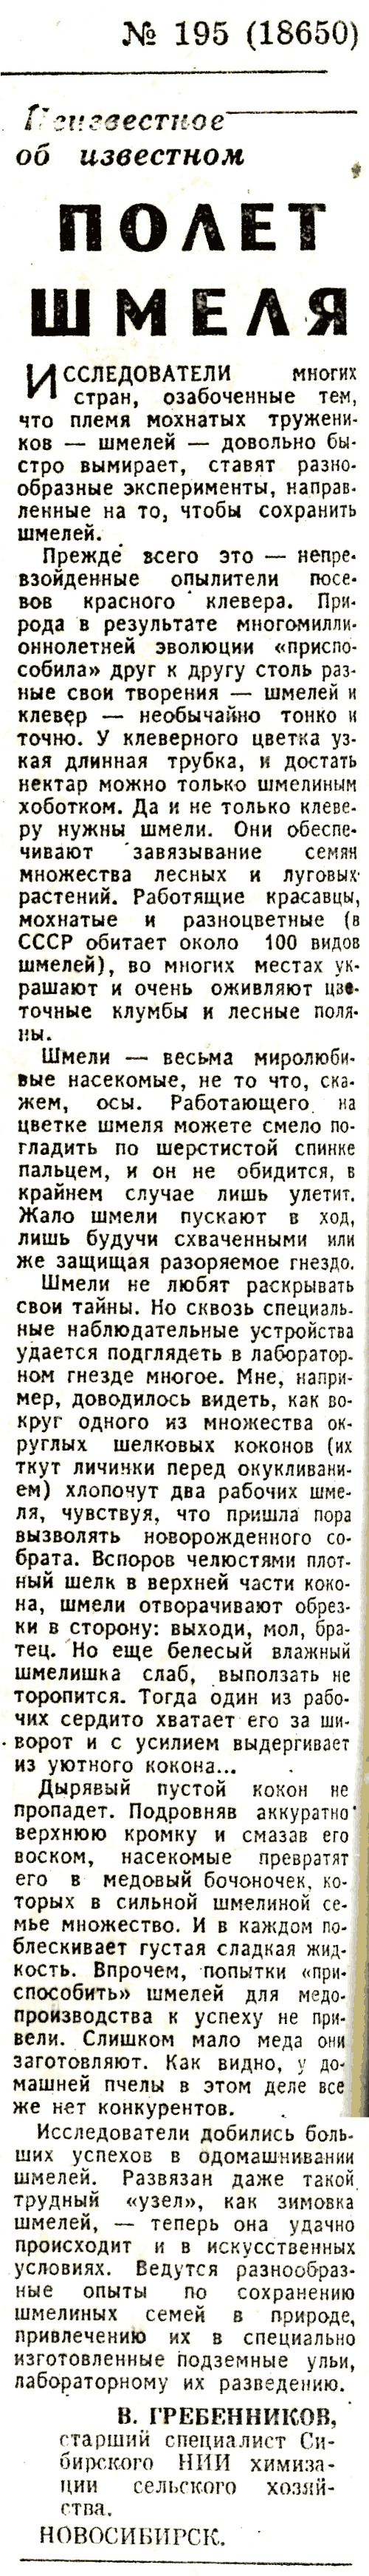 Полет шмеля. В.С. Гребенников. Известия, 19.08.1977.